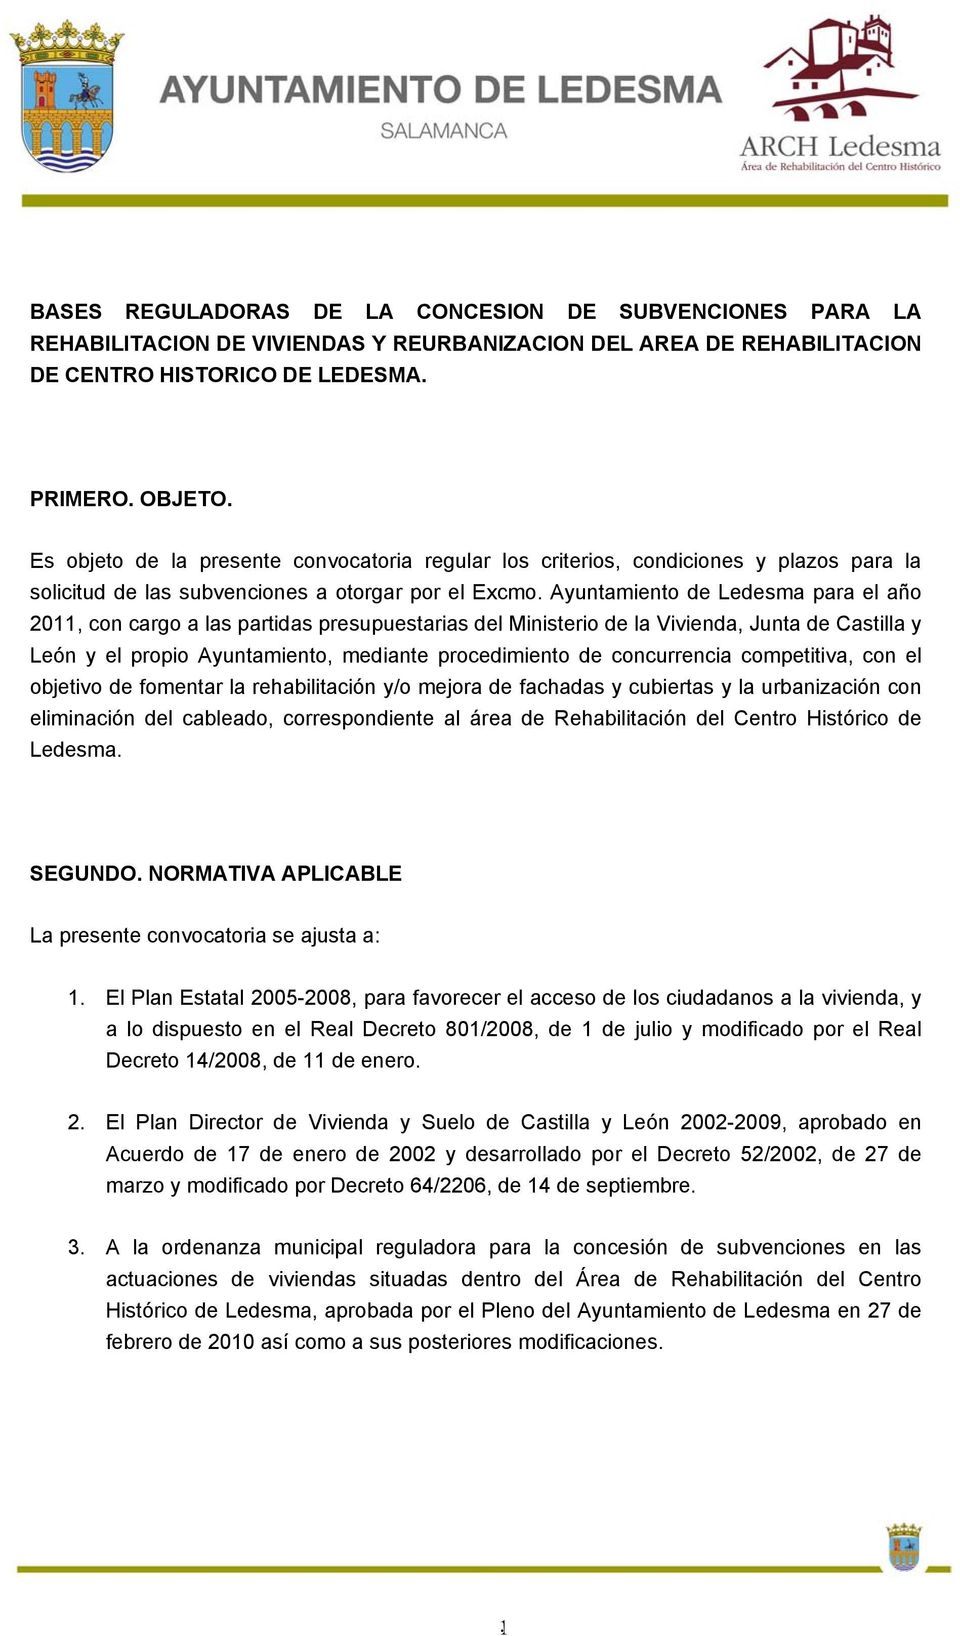 Ayuntamiento de Ledesma para el año 2011, con cargo a las partidas presupuestarias del Ministerio de la Vivienda, Junta de Castilla y León y el propio Ayuntamiento, mediante procedimiento de